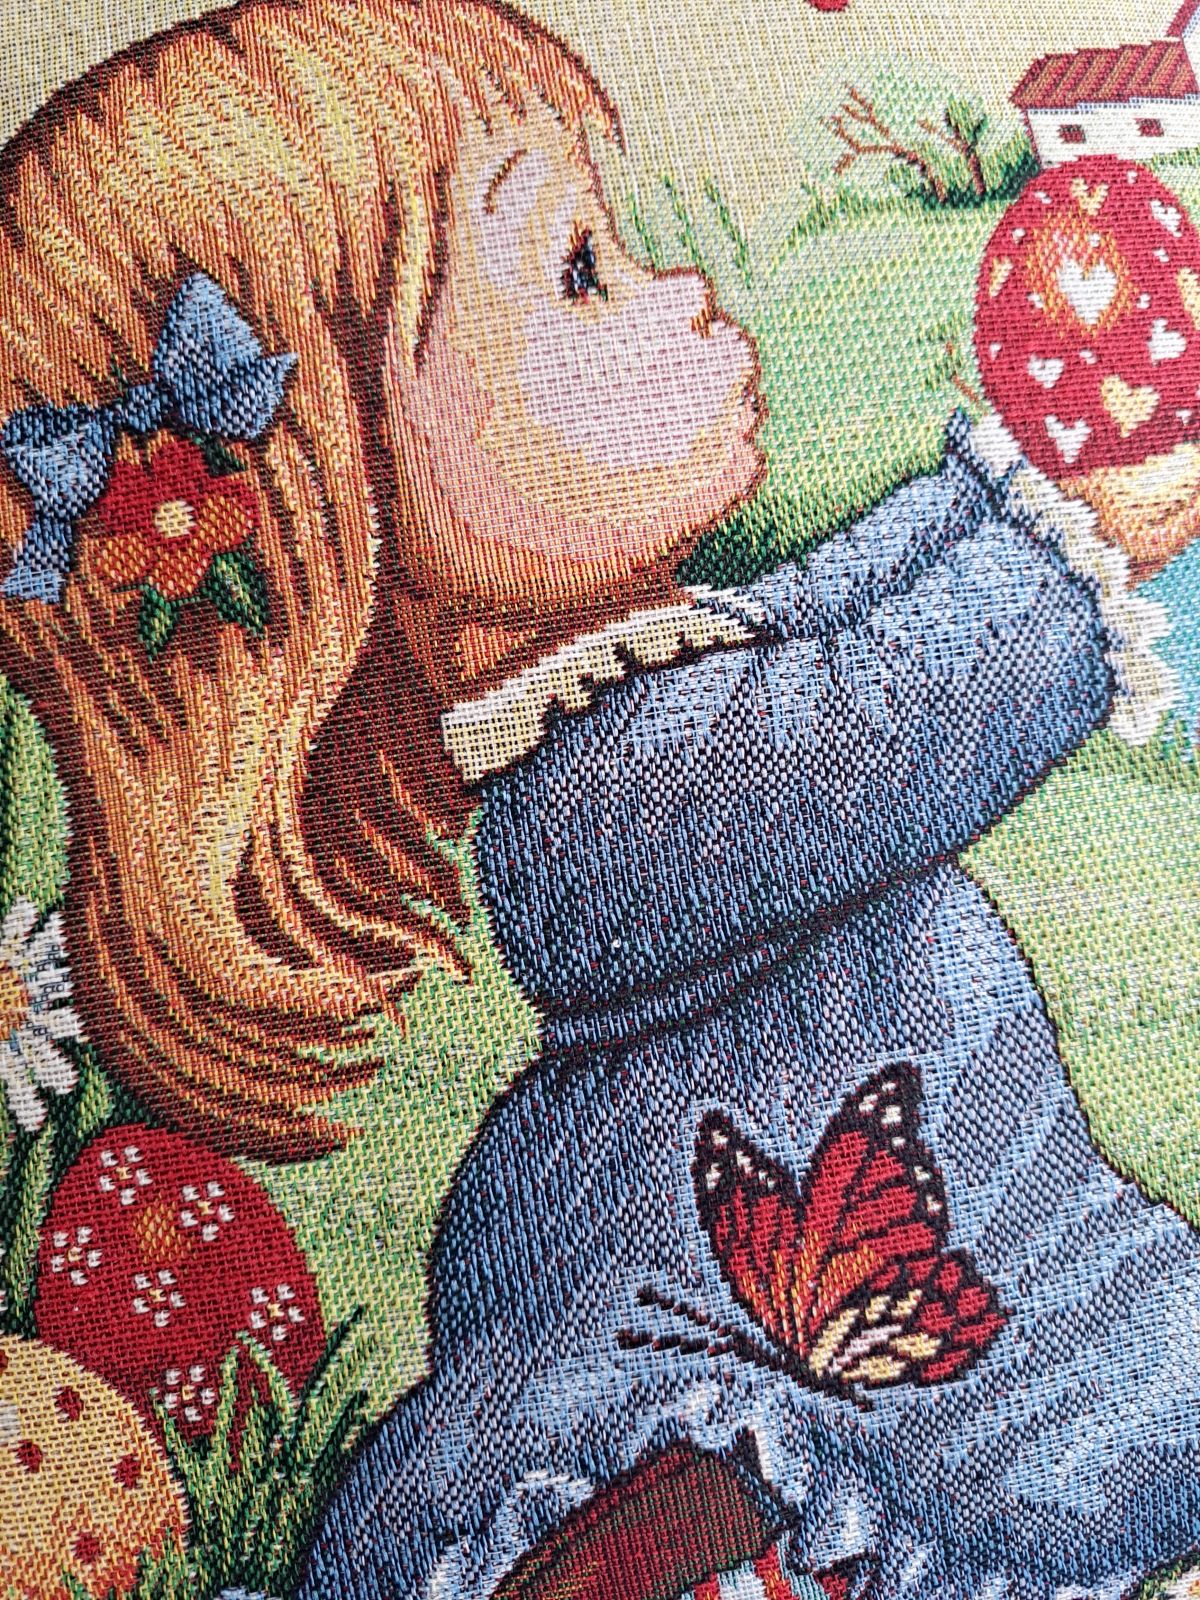 Poszewka Wielkanocna V50 z dziewczynką gobelinowa poszewka na jaśka